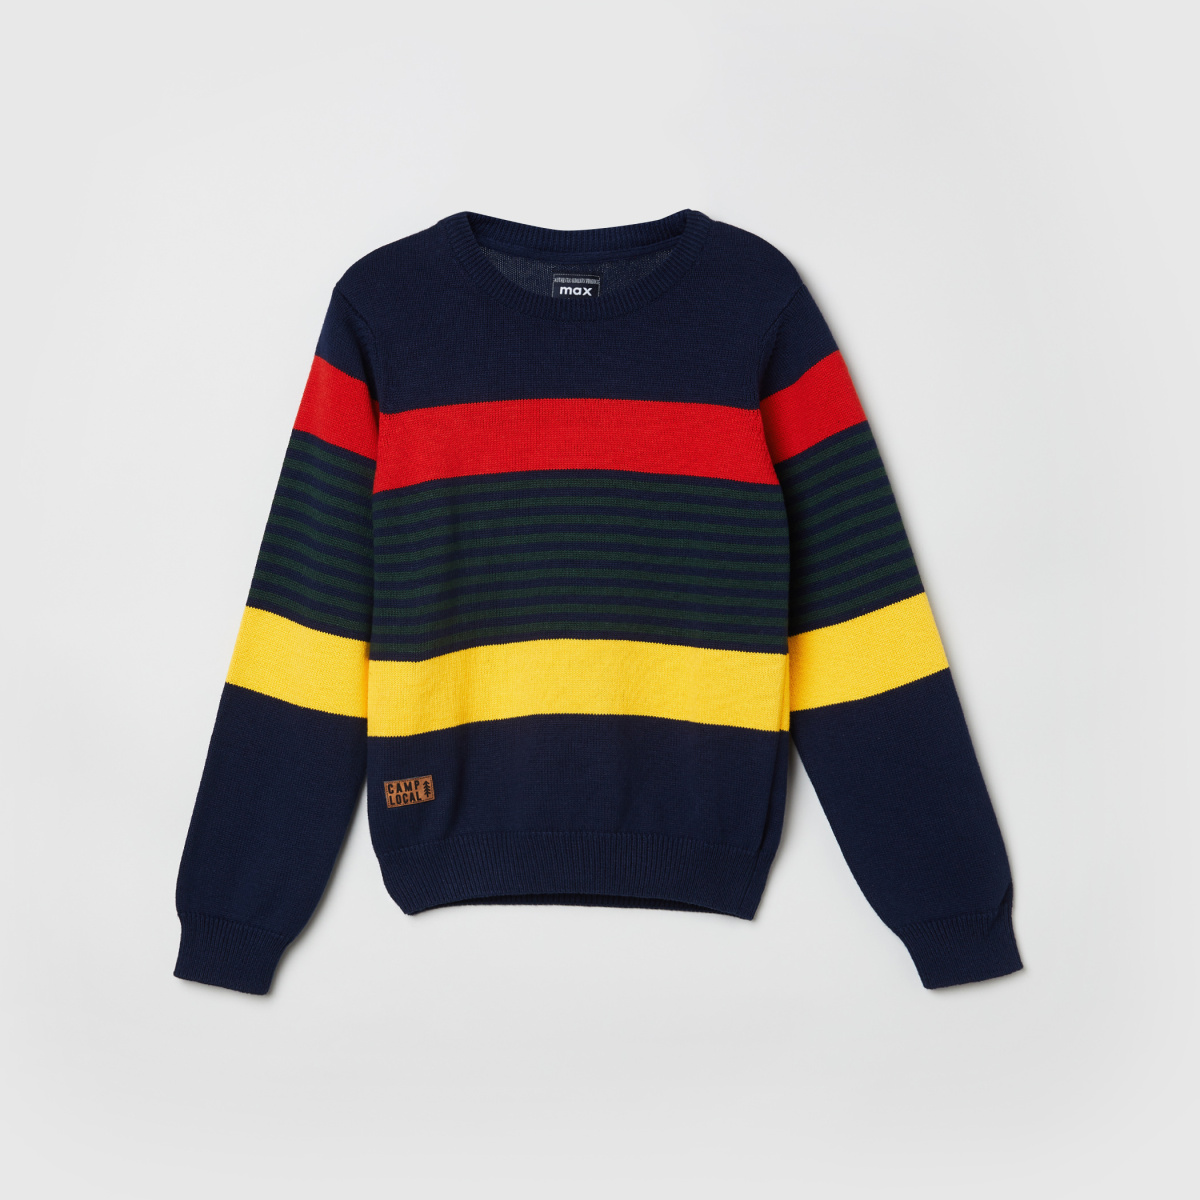 MAX Striped Crew Neck Sweater